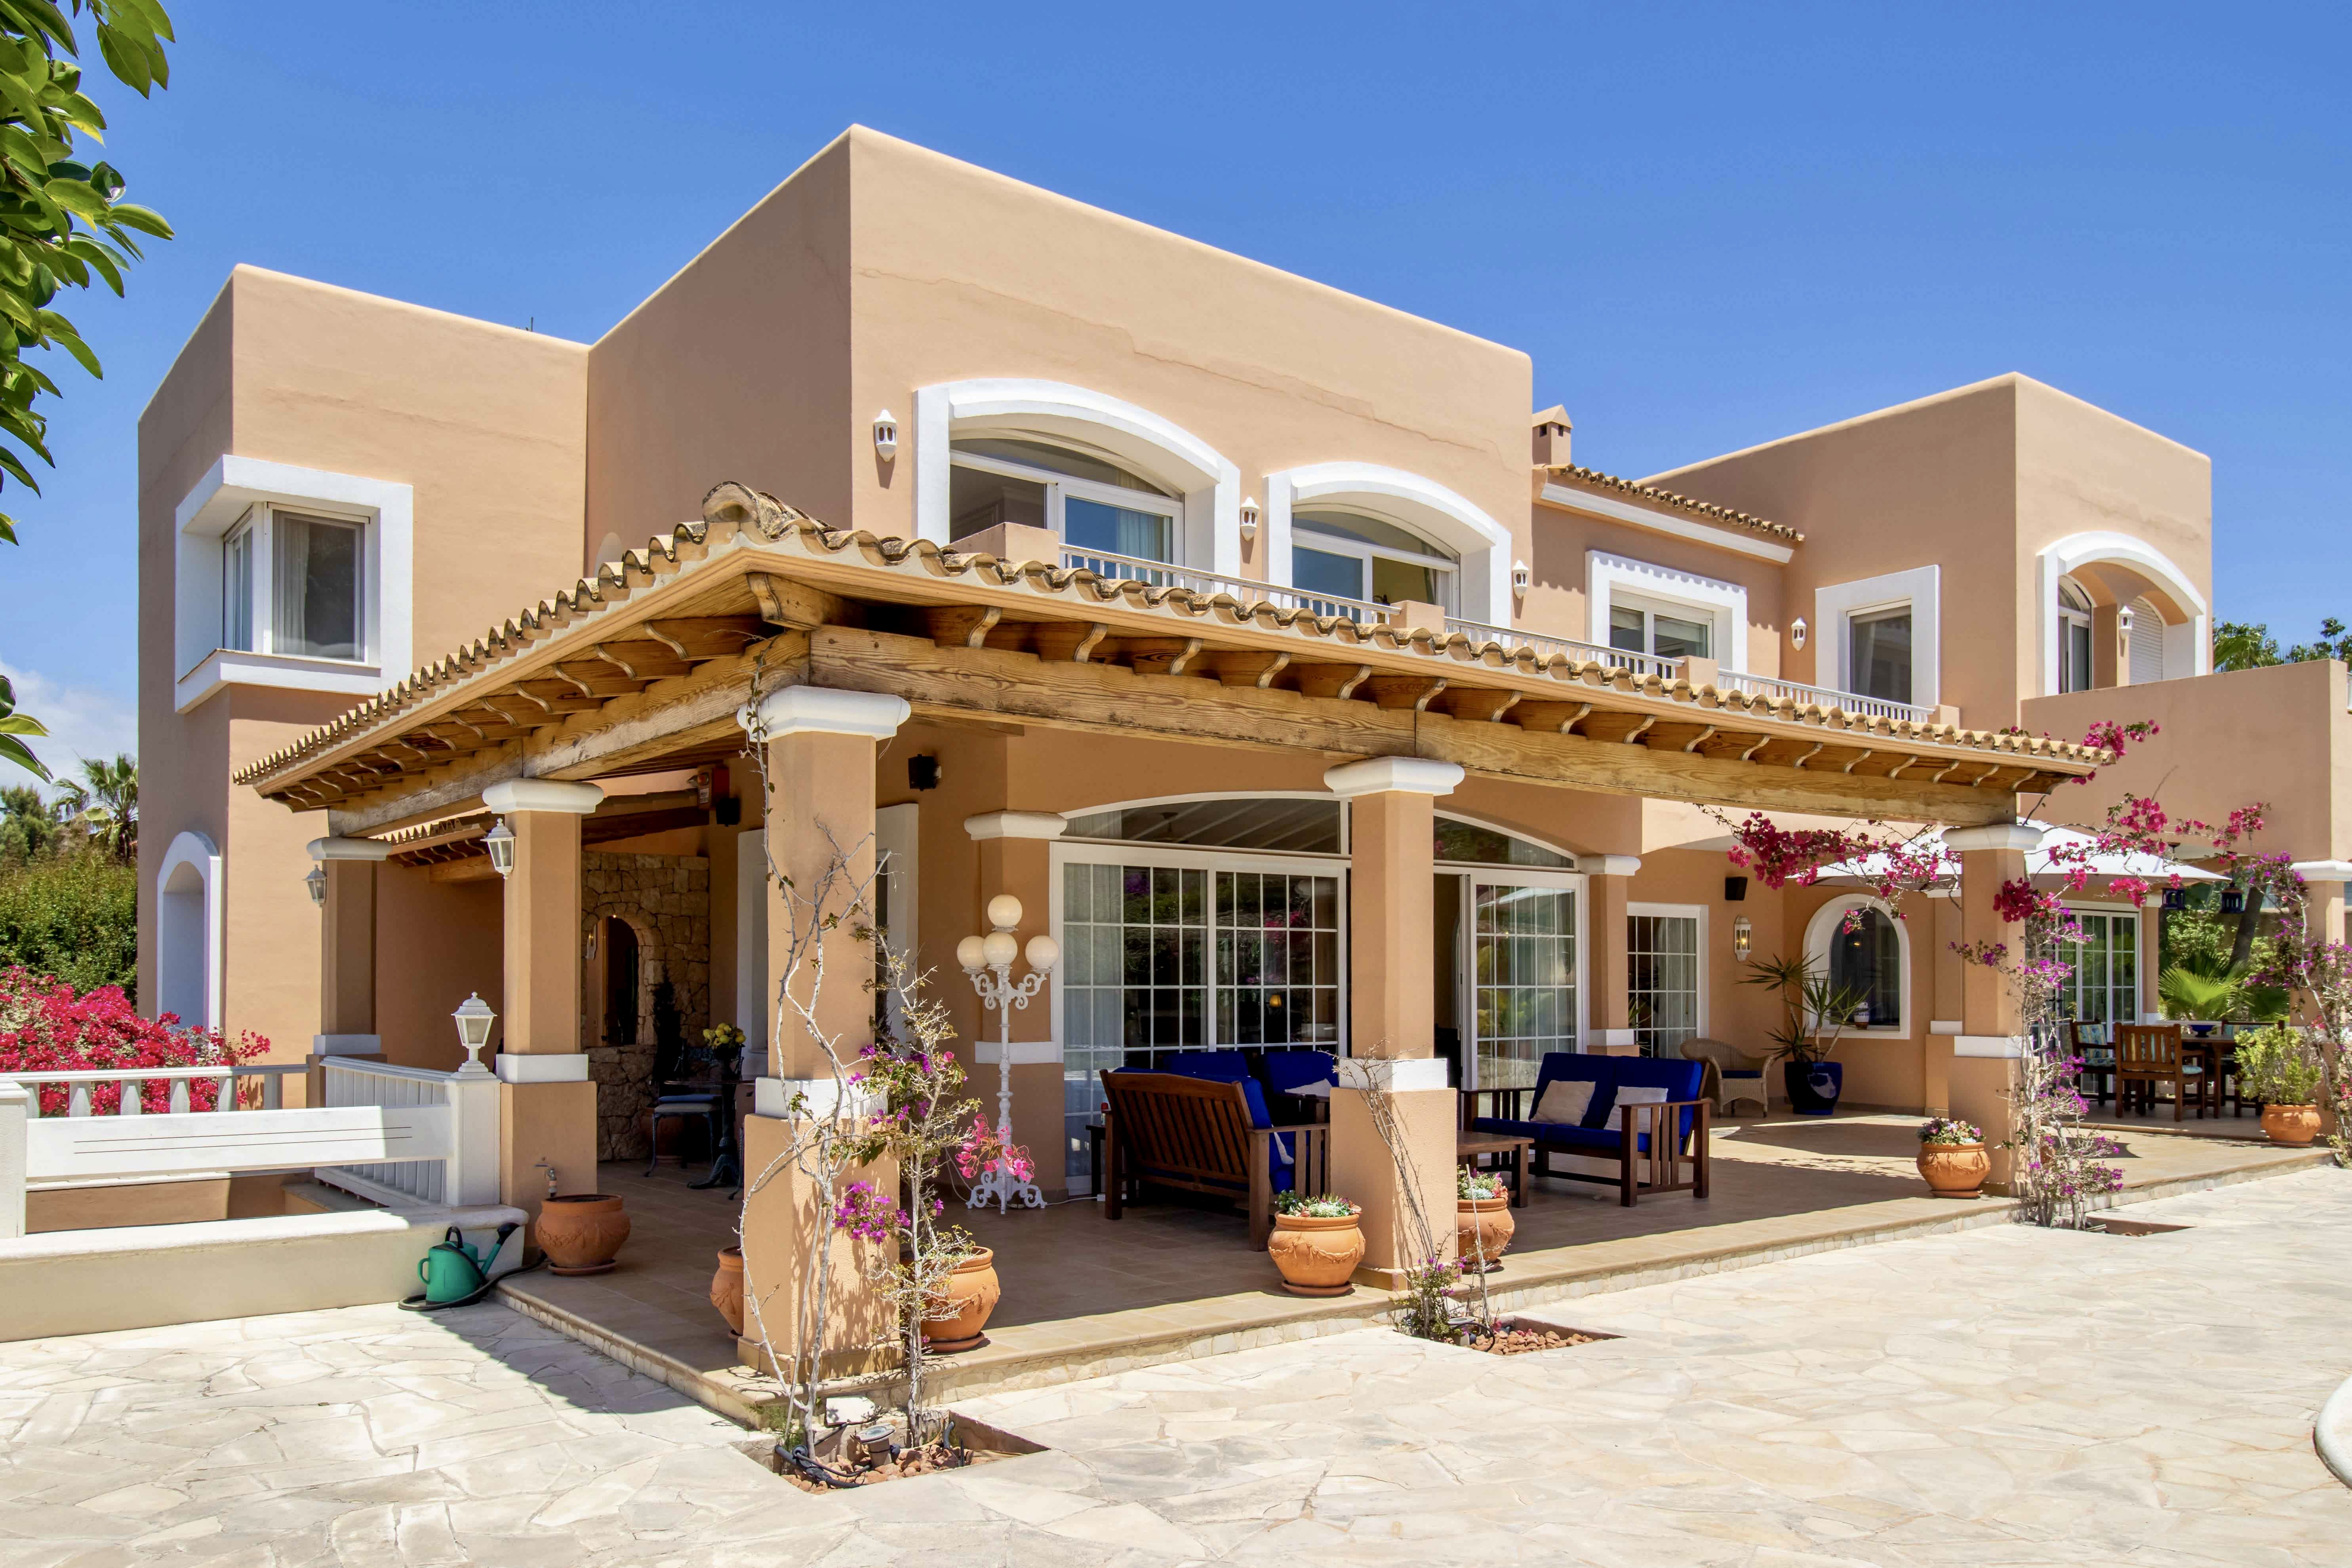 Generous mediterranean style family home close to Ibiza Town - 5